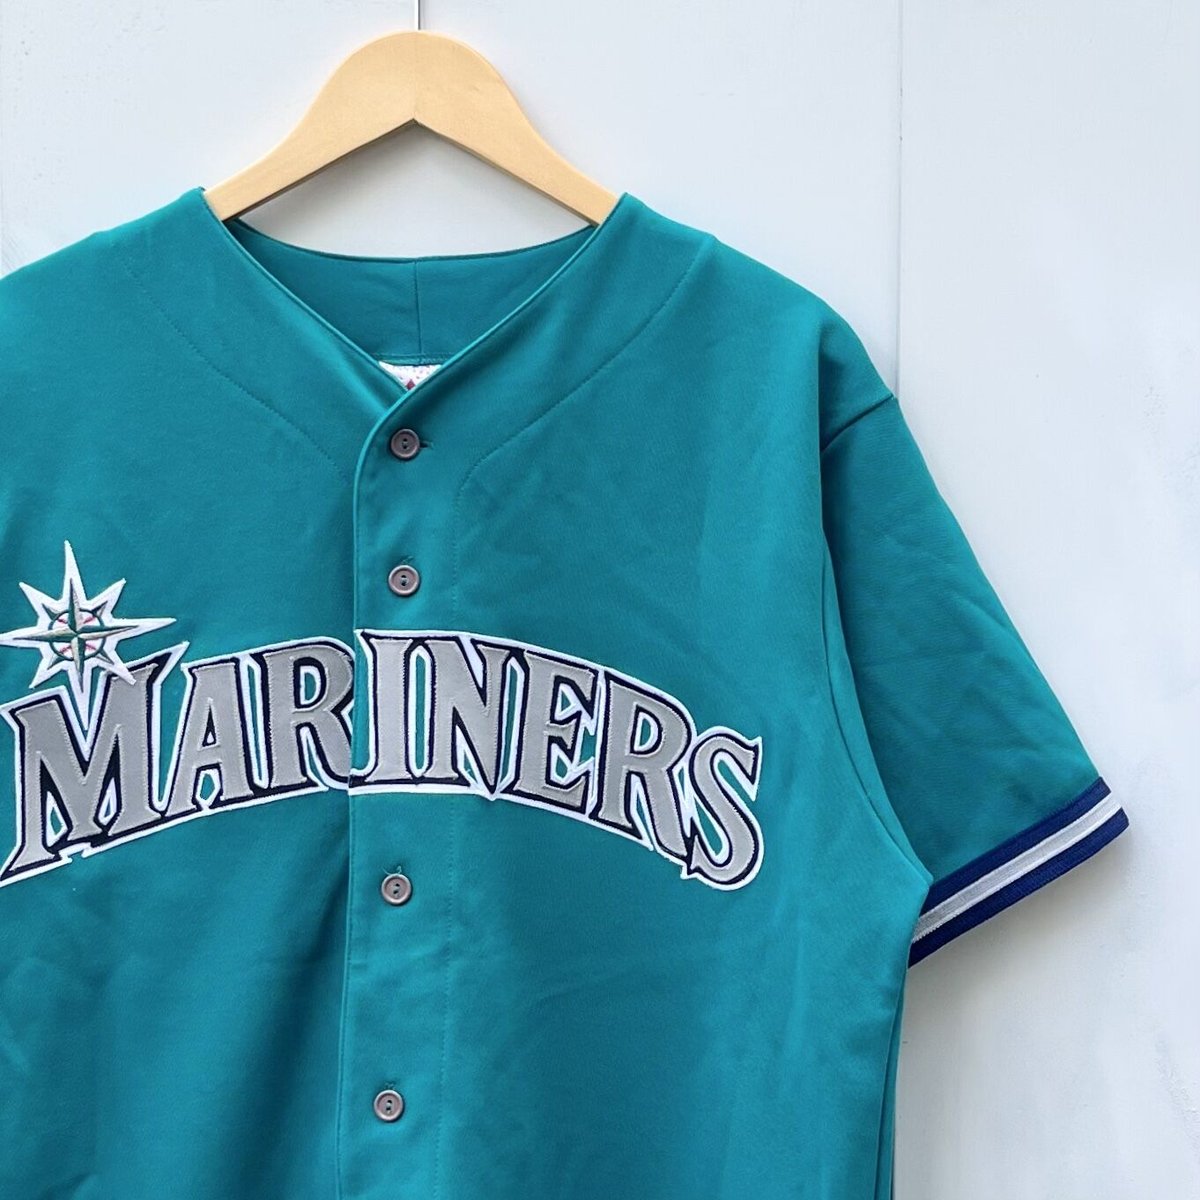 野球【未使用品】 MLB Majestic マリナーズ ベースボールシャツ M